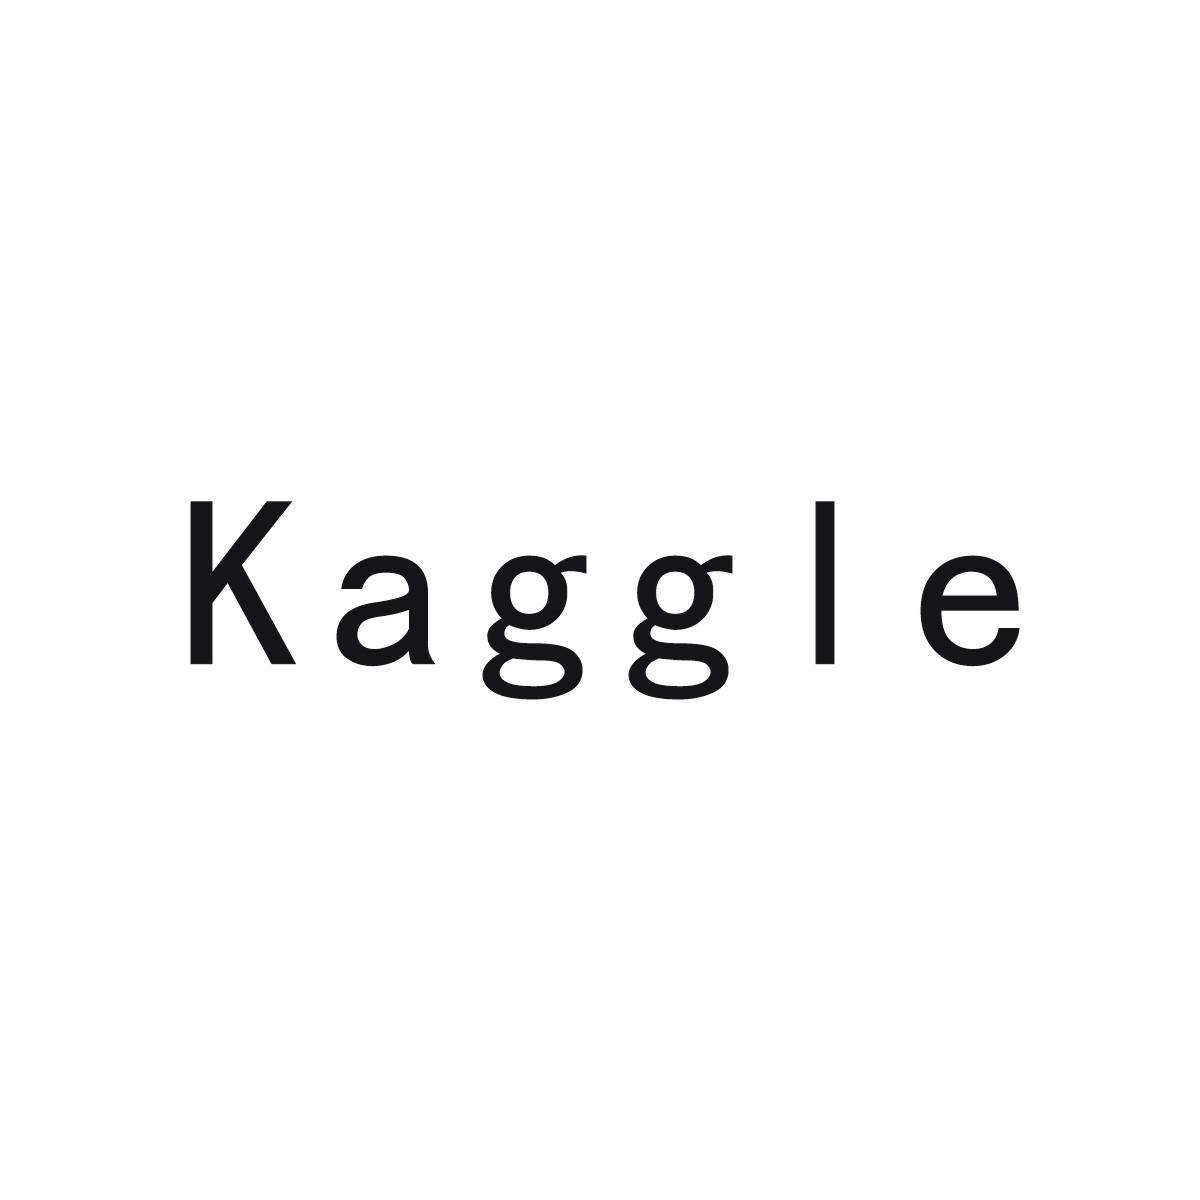 42类-网站服务KAGGLE商标转让